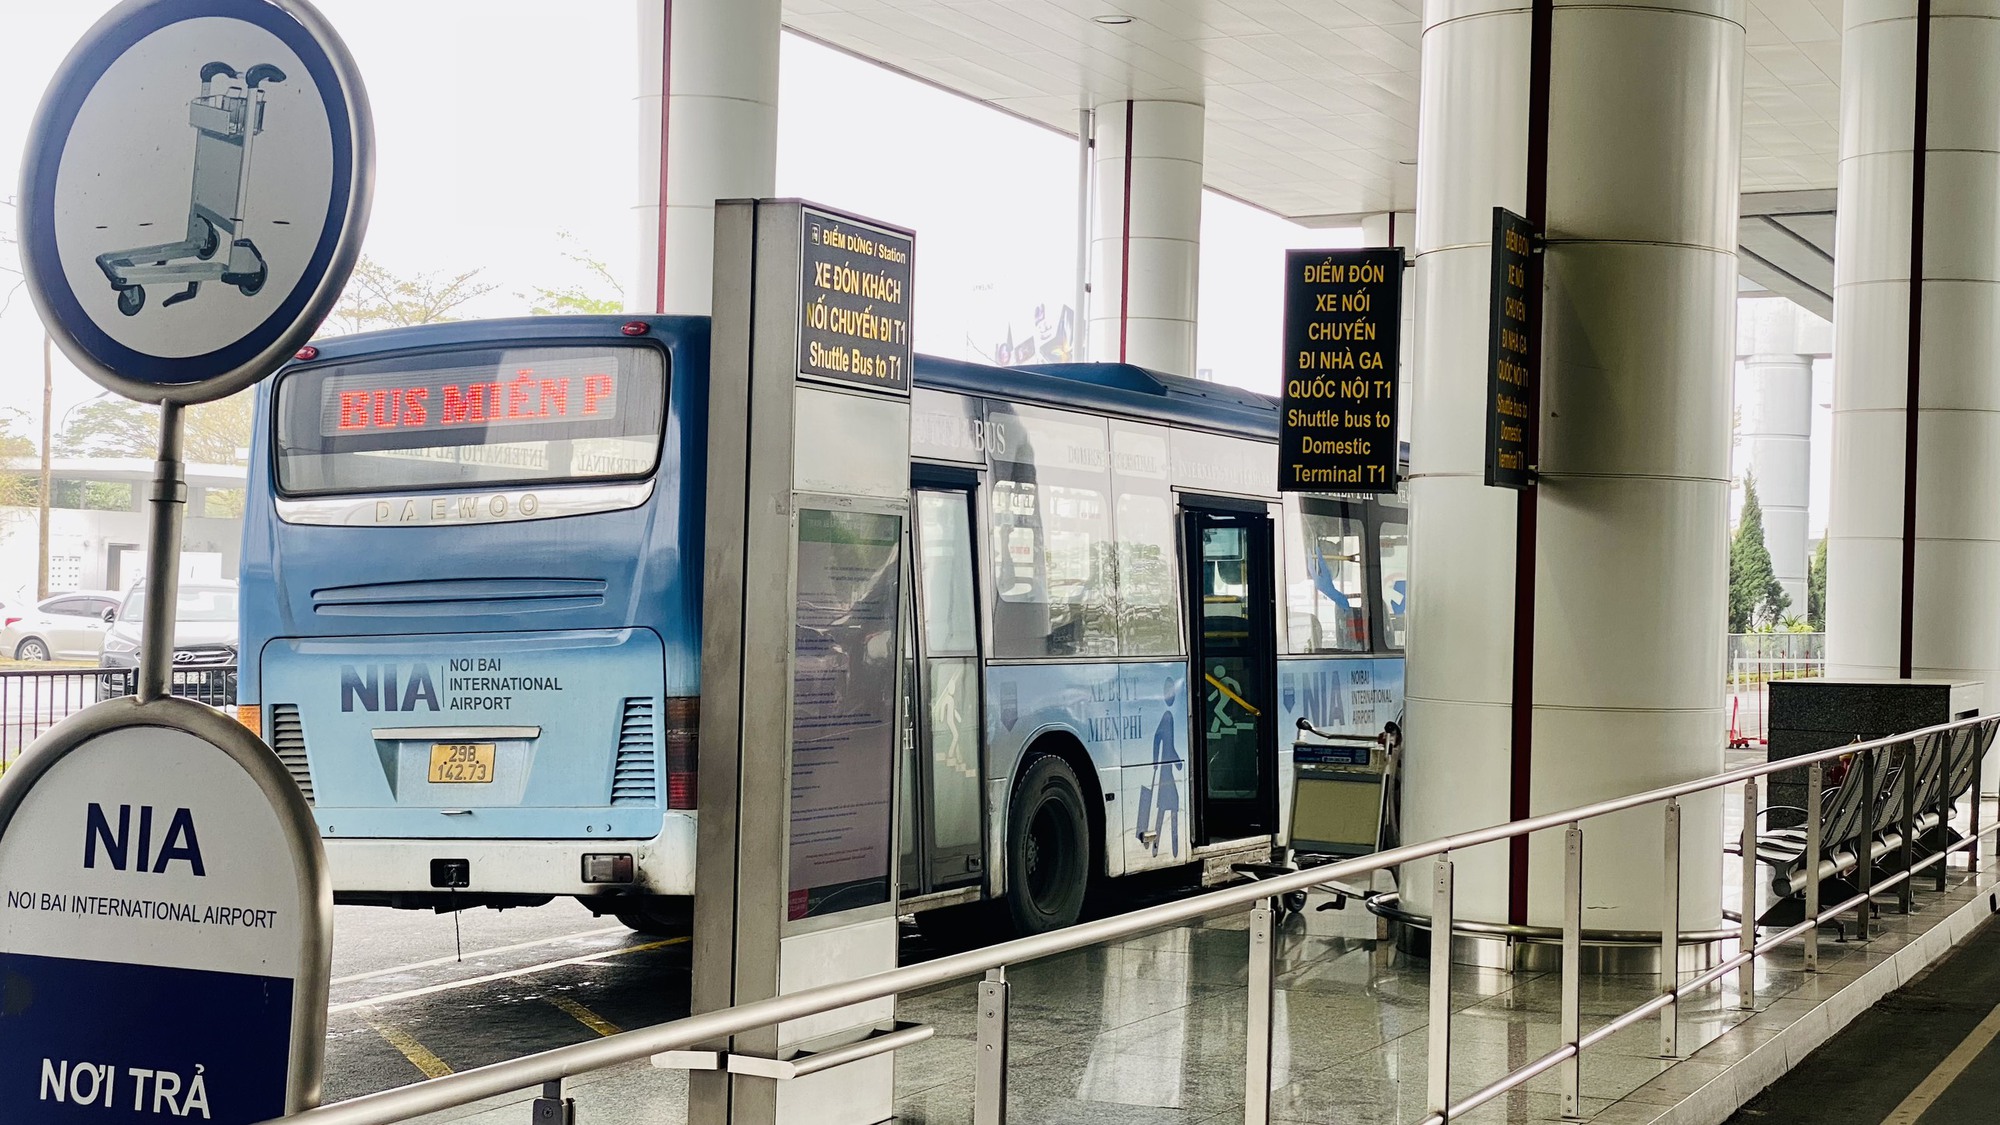 Khuyến cáo khách bay dùng xe nối chuyến miễn phí tại Nội Bài - Ảnh 7.